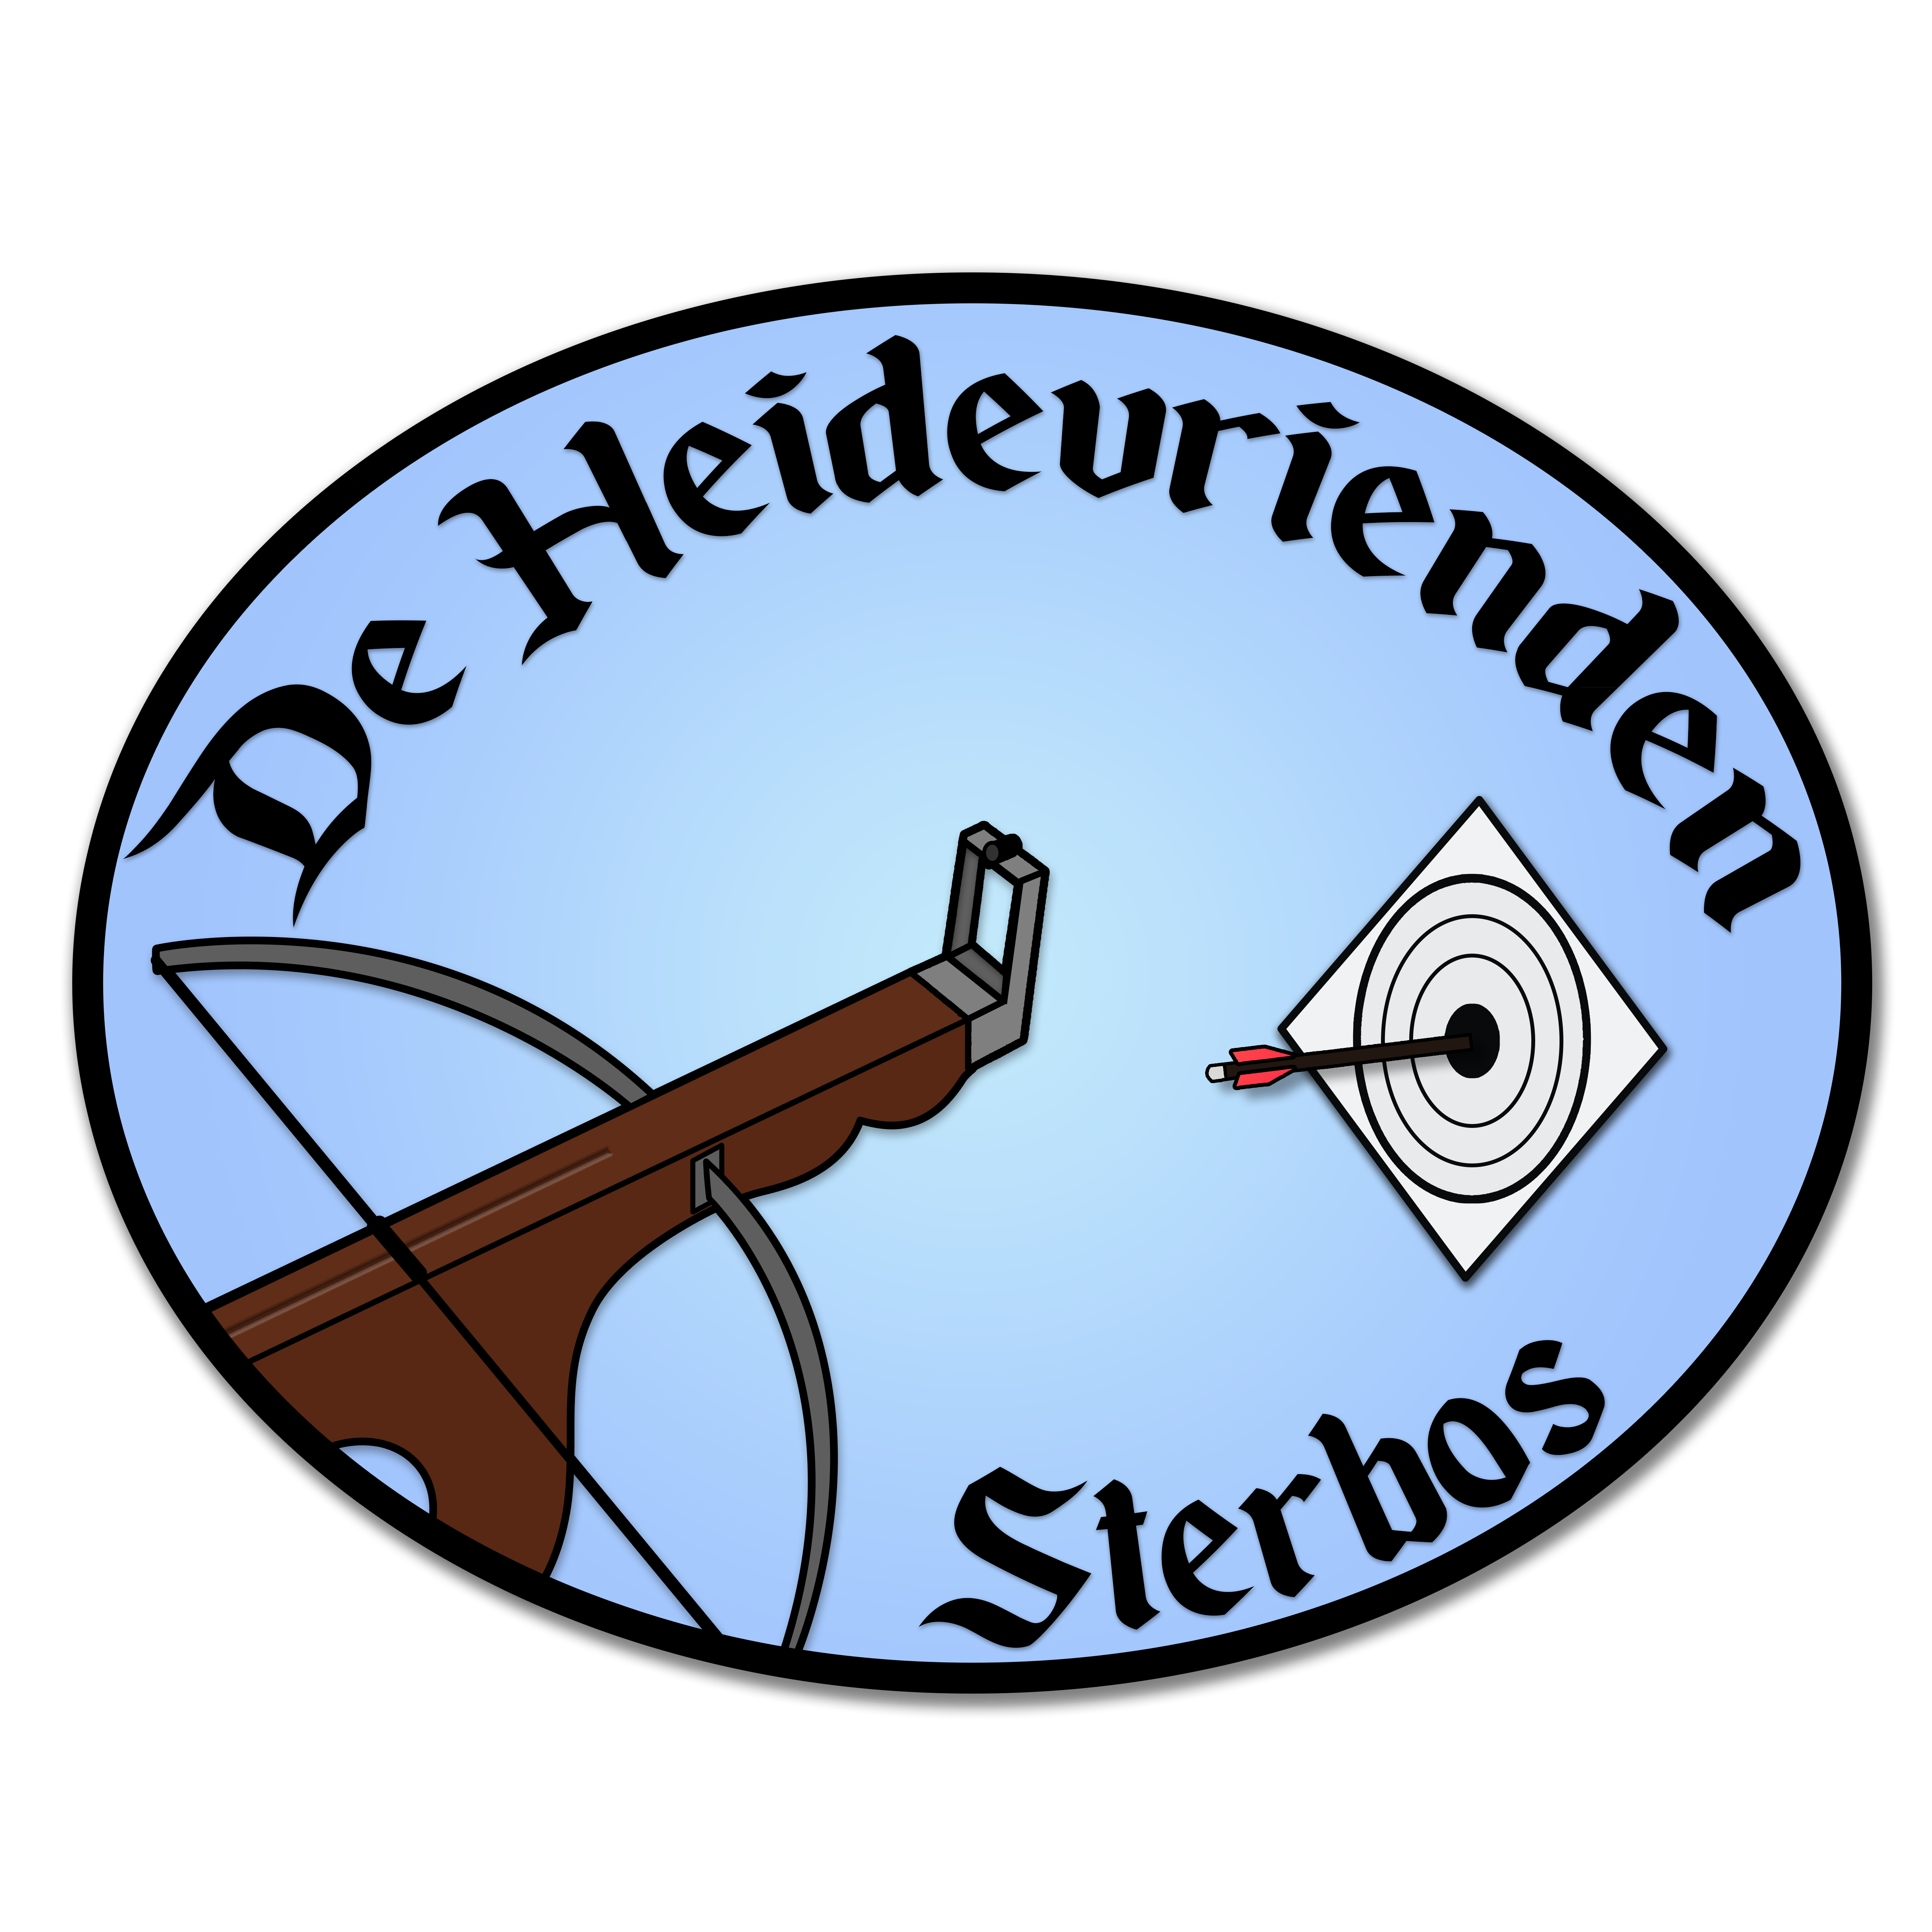 Heidevrienden - logo